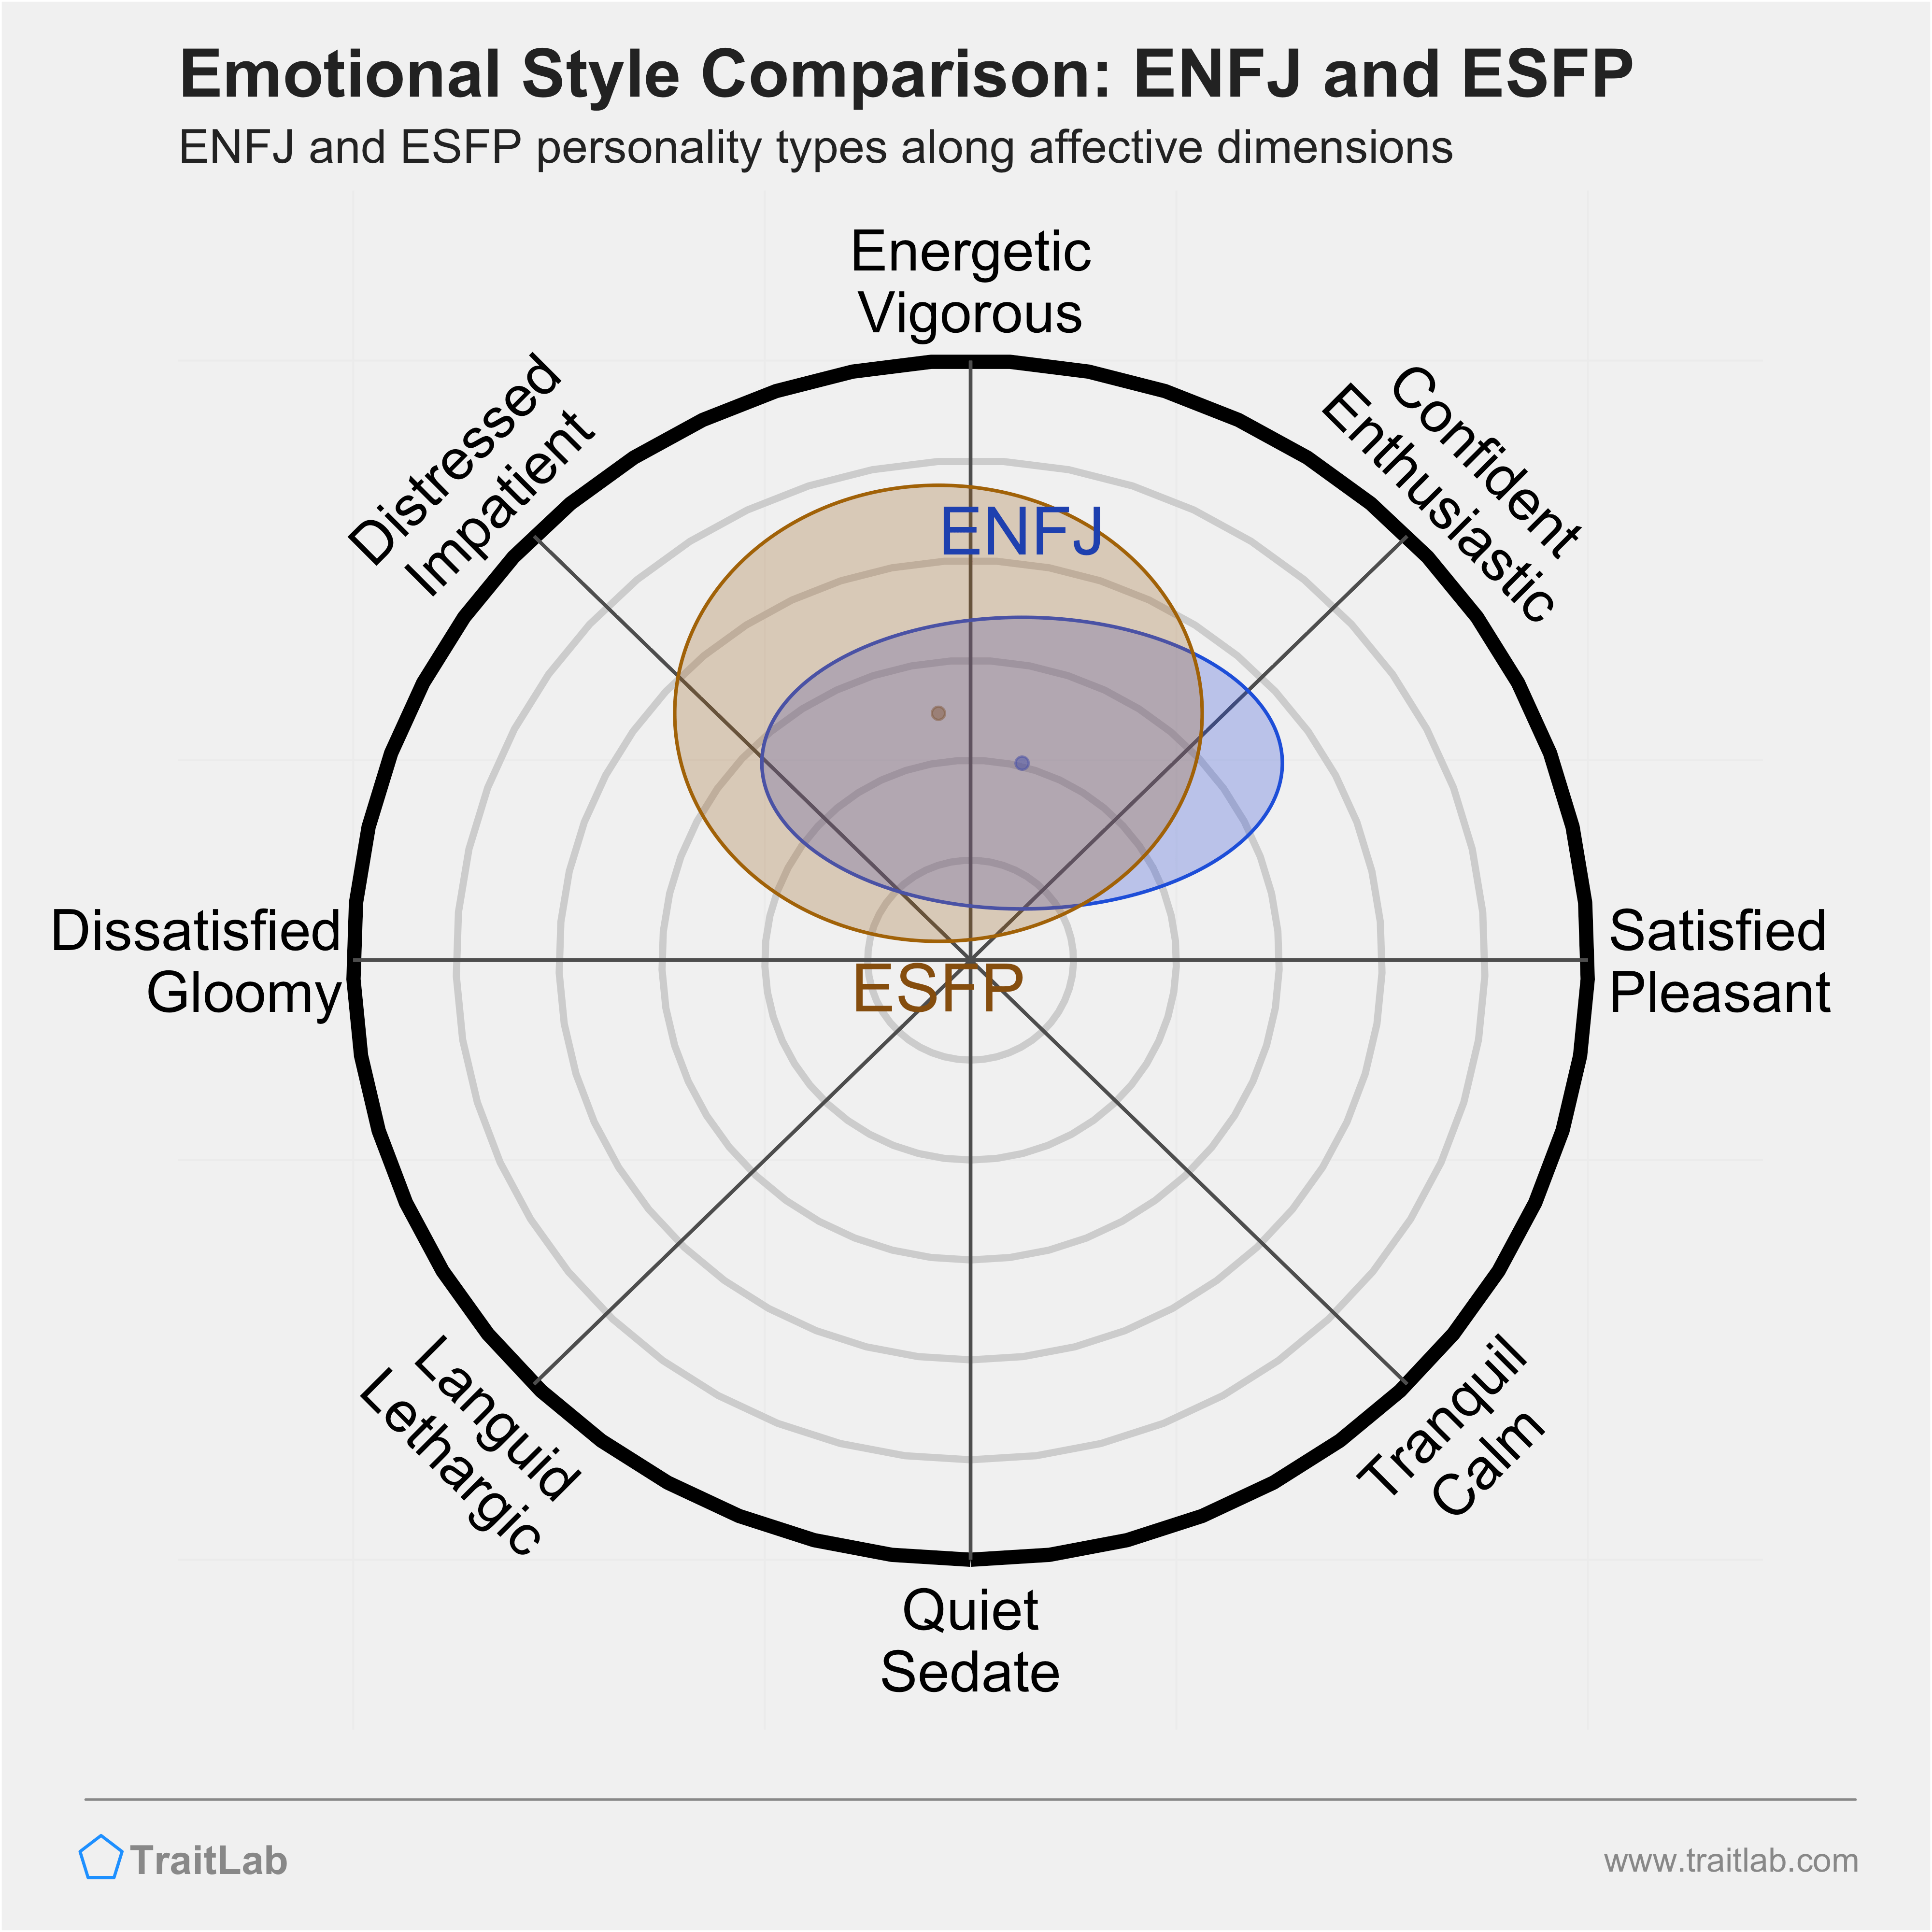 ENFJ and ESFP comparison across emotional (affective) dimensions